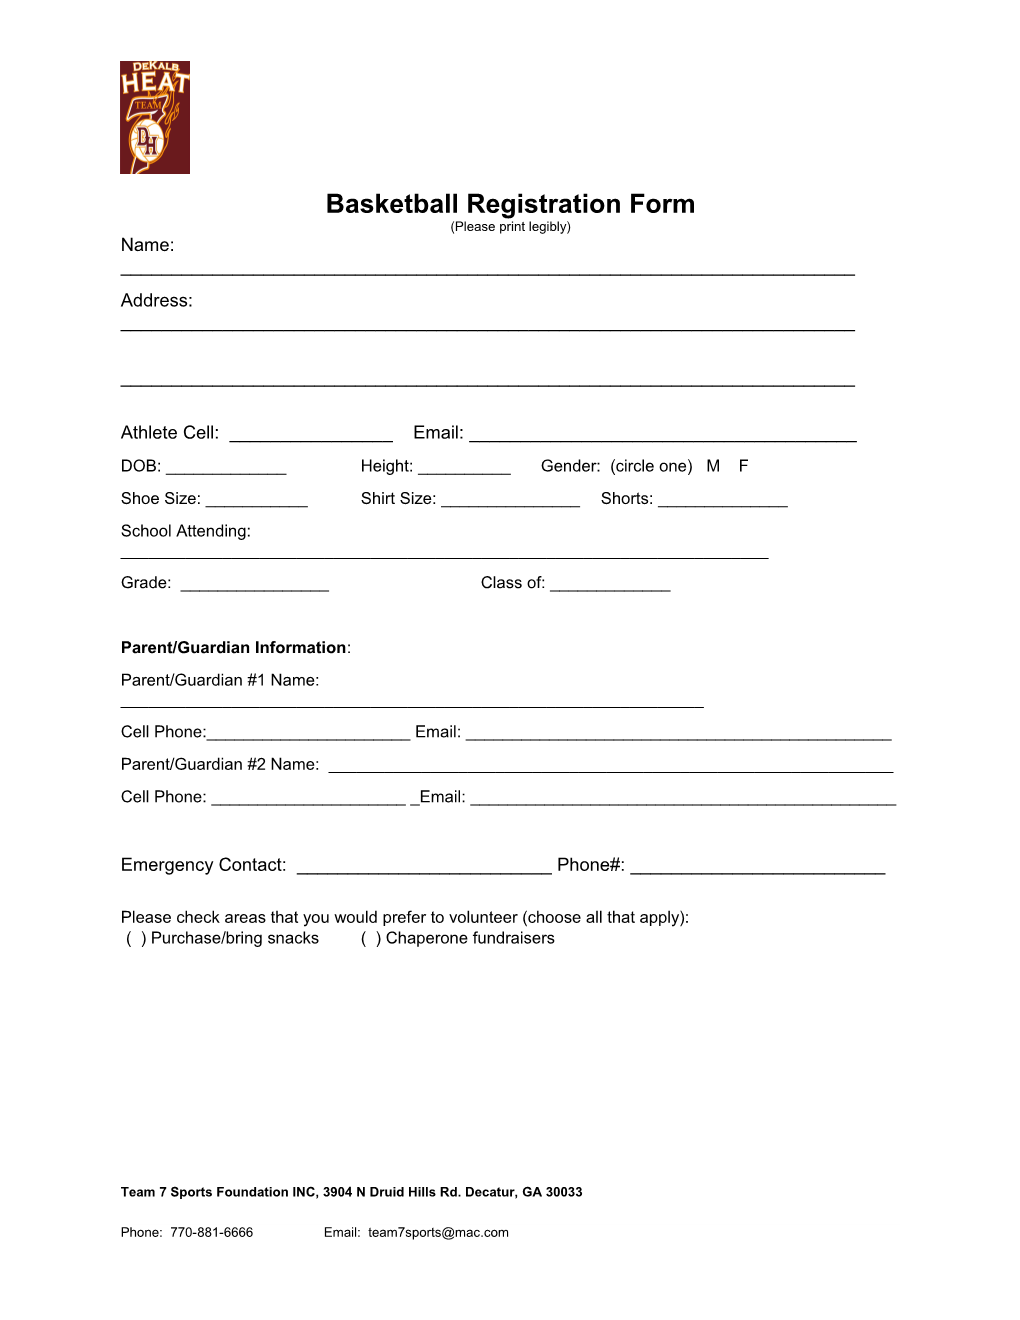 Basketball Registration Form